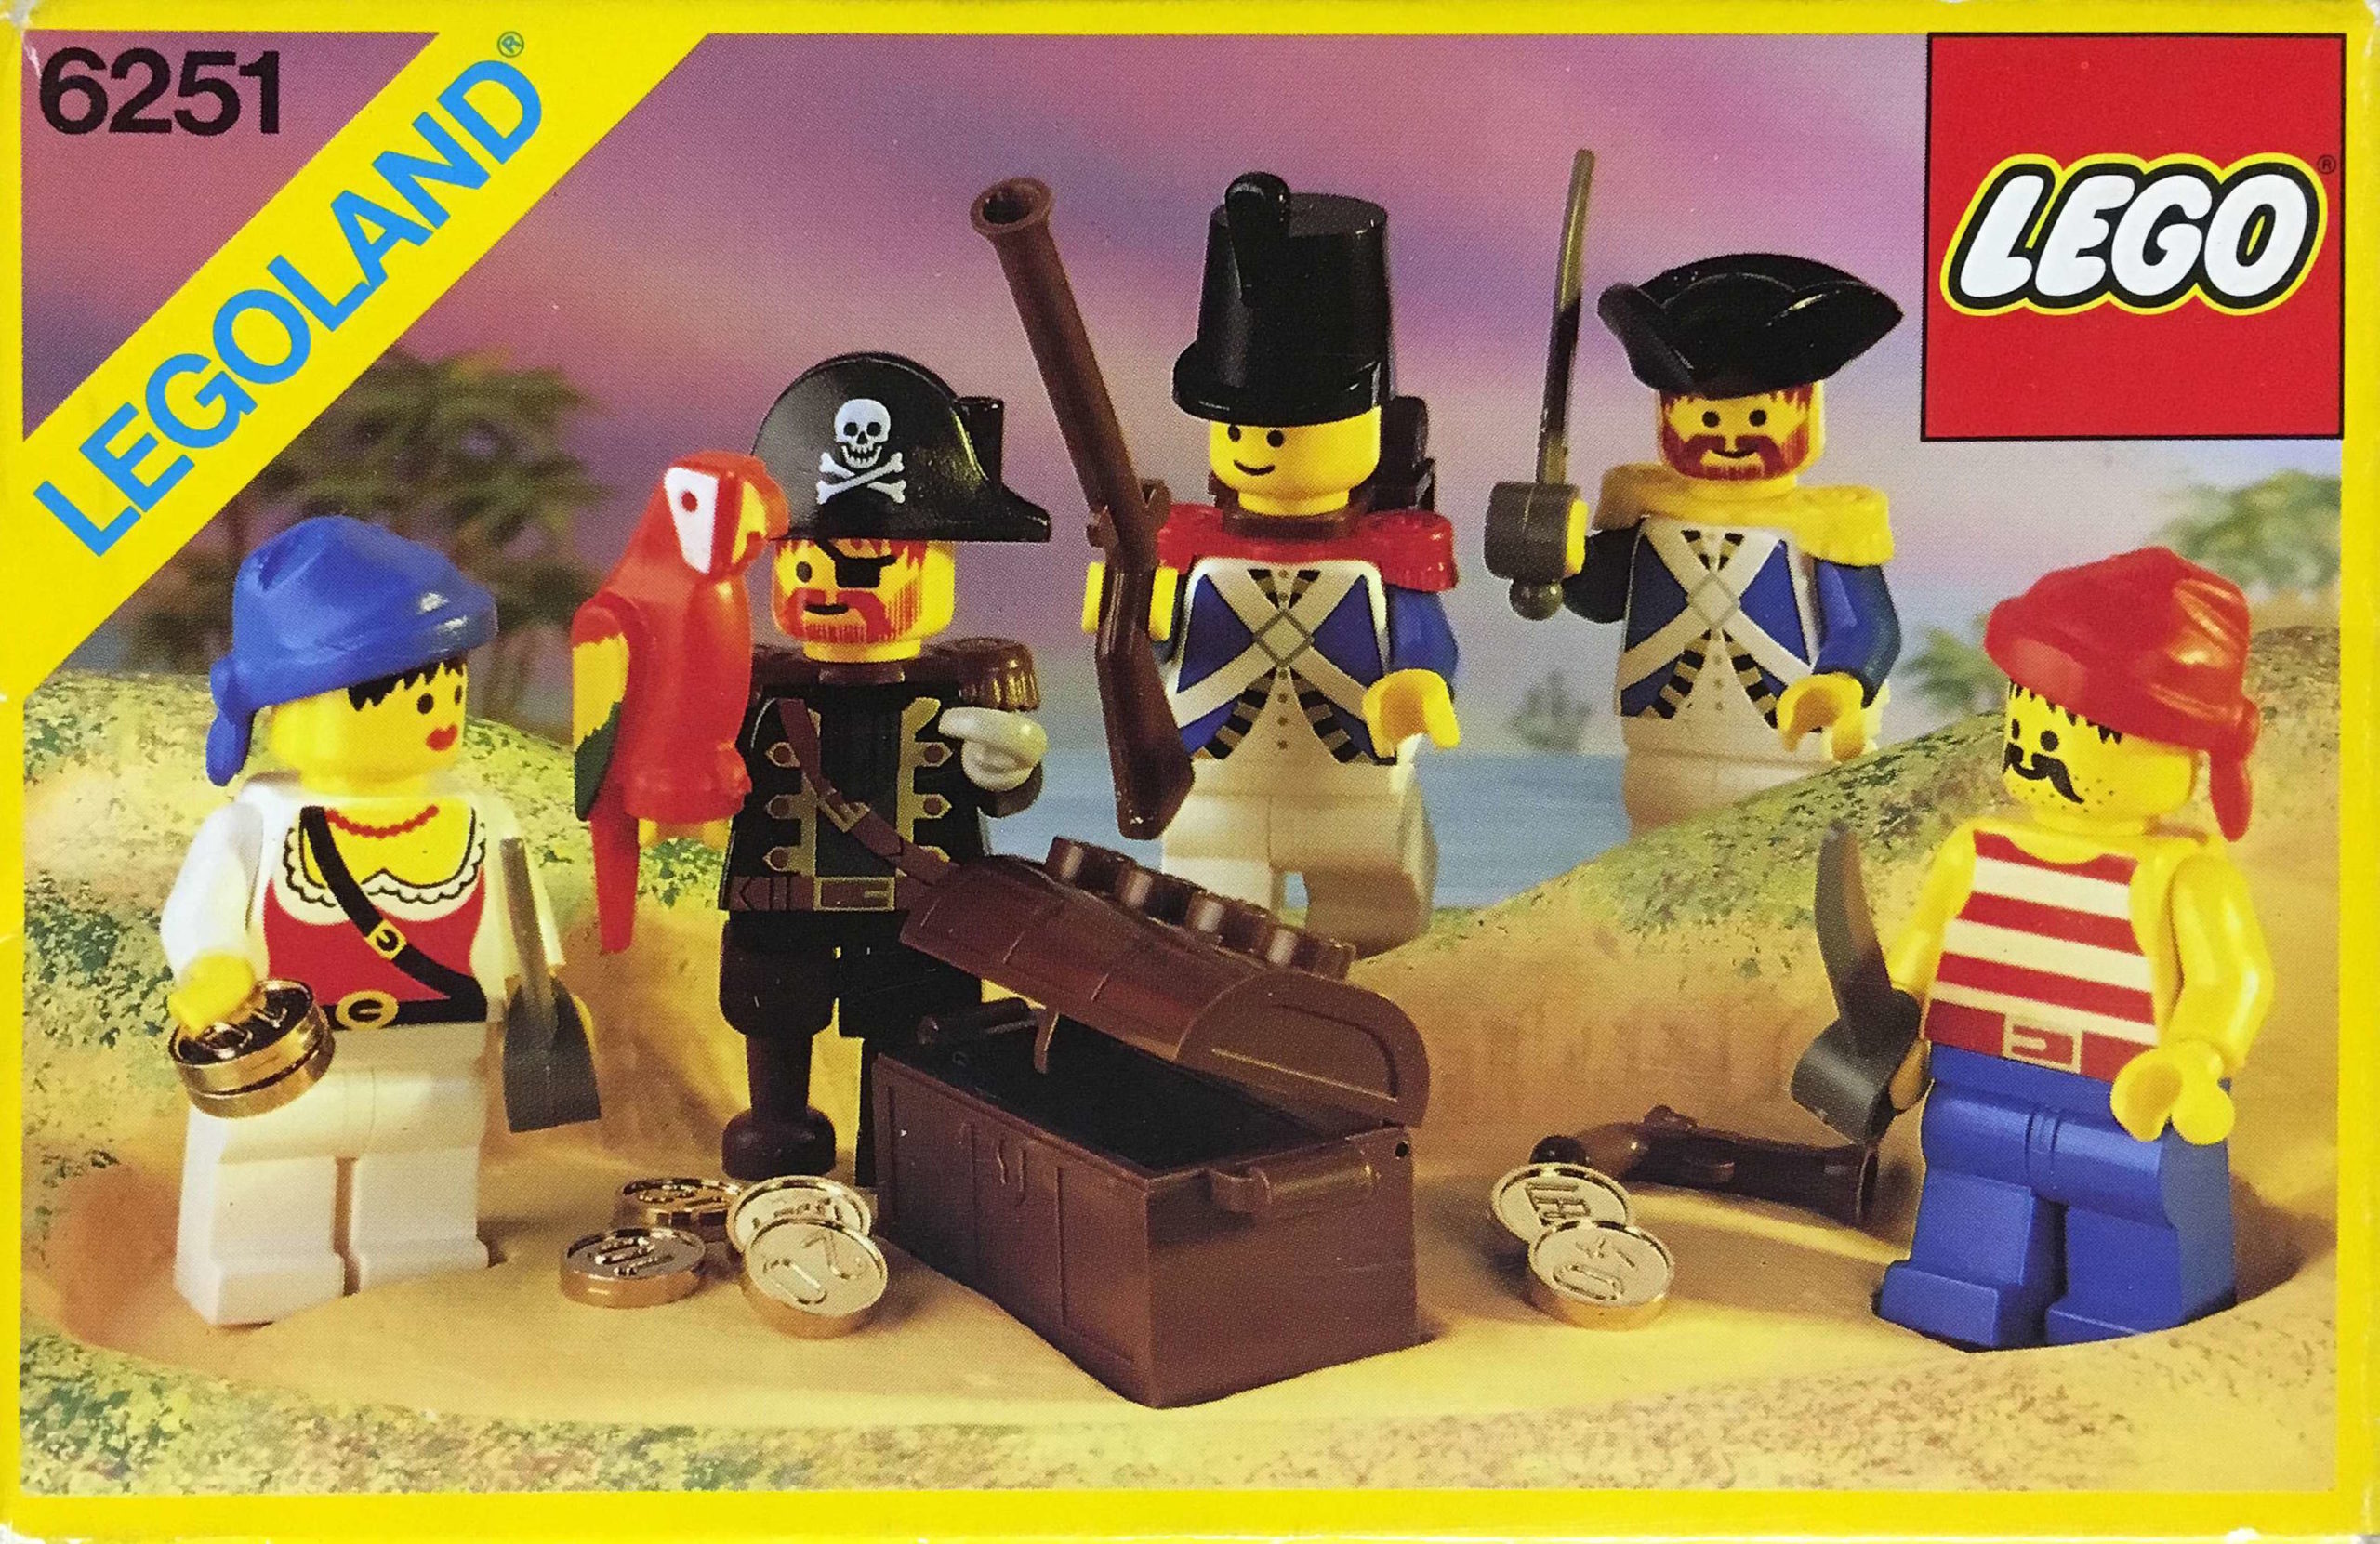 6251: Pirate Mini Figures (Sea Mates)